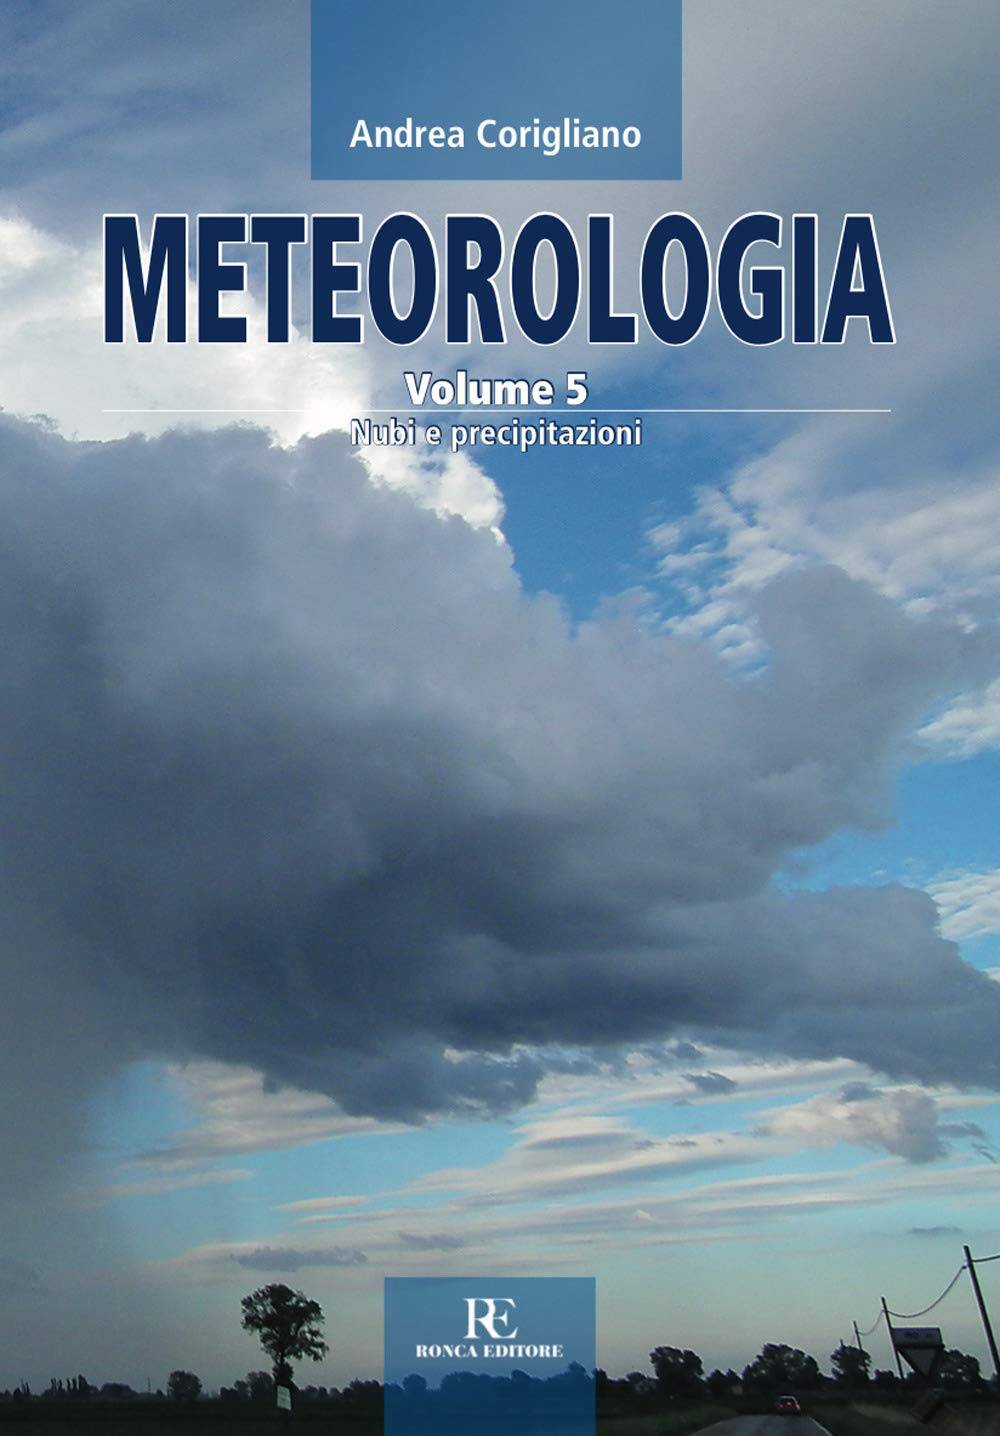 Meteorologia, la collana di Andrea Corigliano, Volume 5 - Nubi e precipitazioni